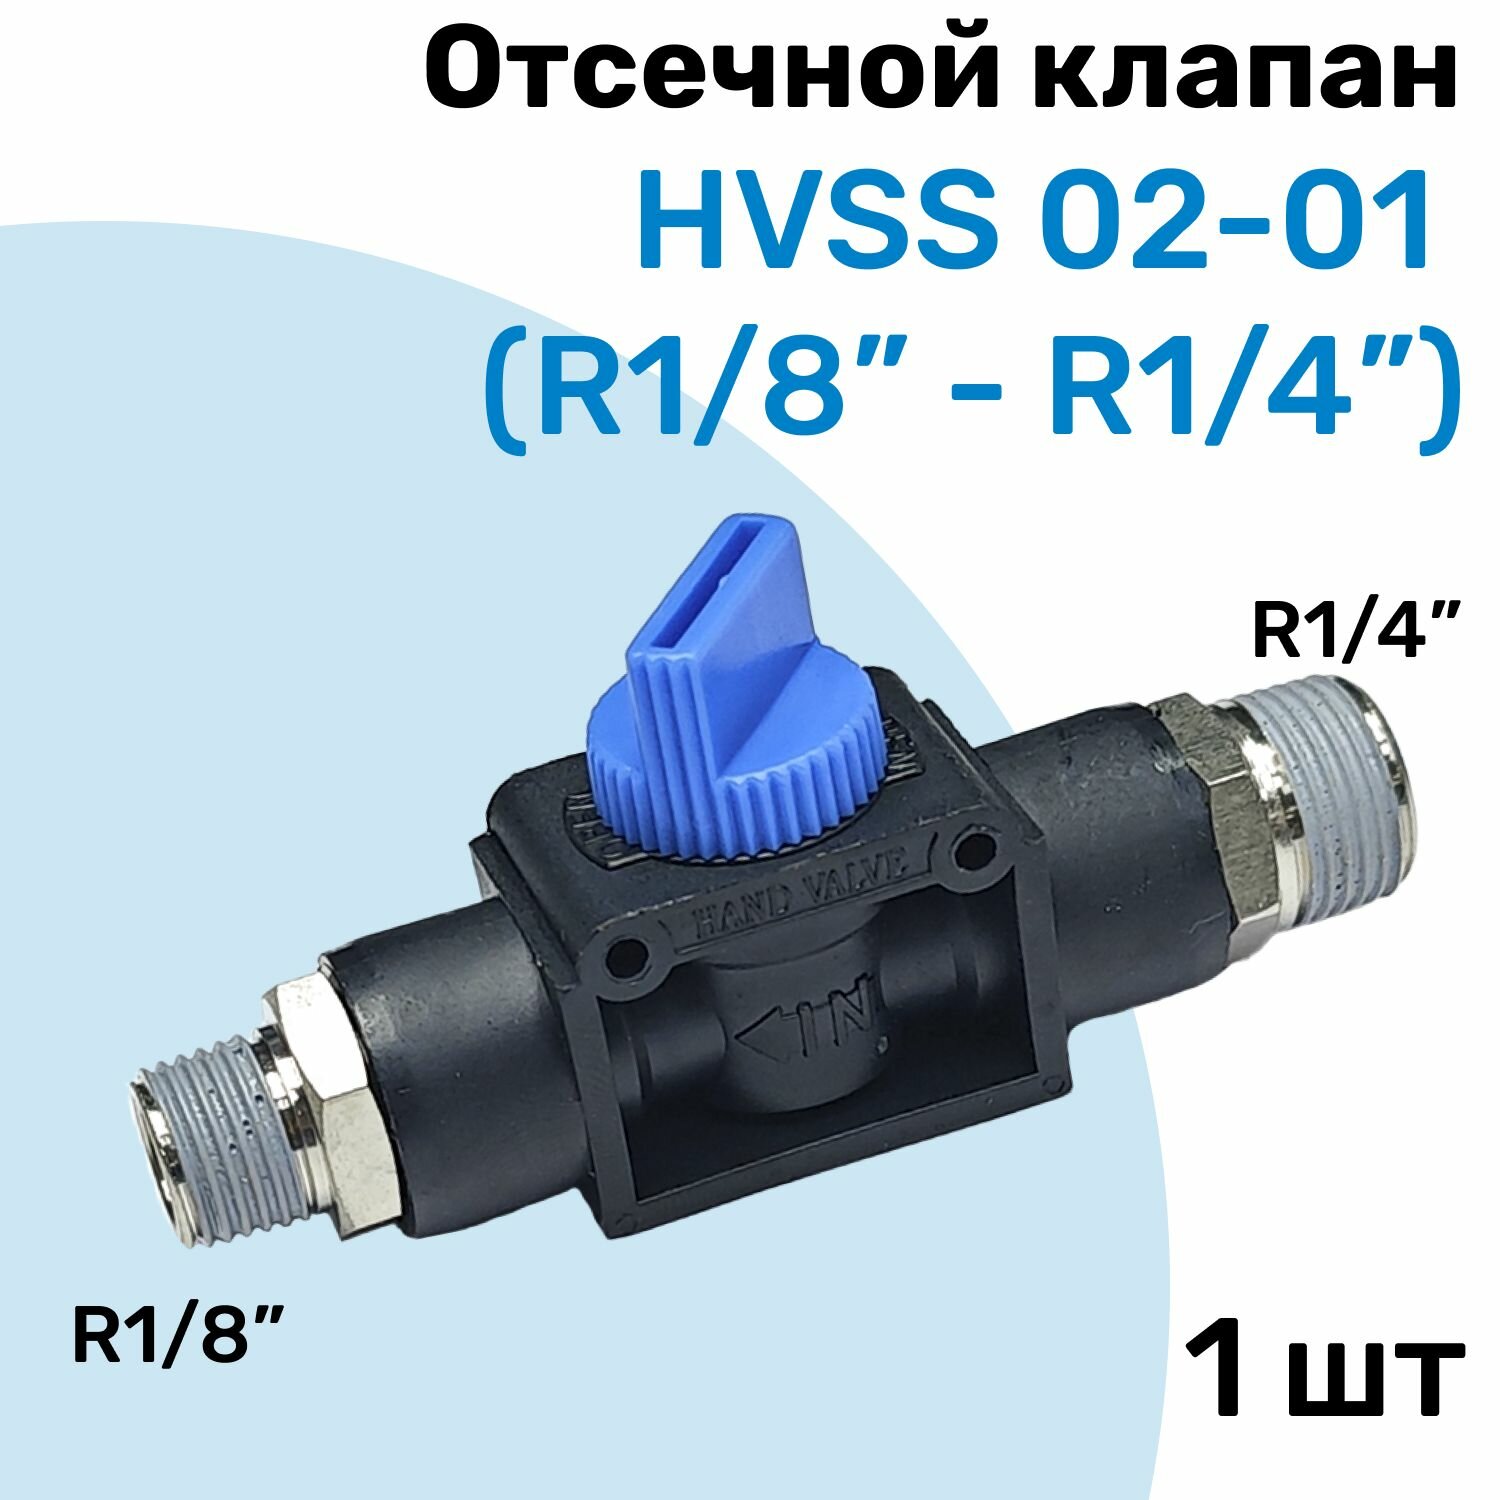 Отсечной клапан HVSS 02-01, R1/4"-R1/8", Клапан сброса давления, Пневмофитинг NBPT